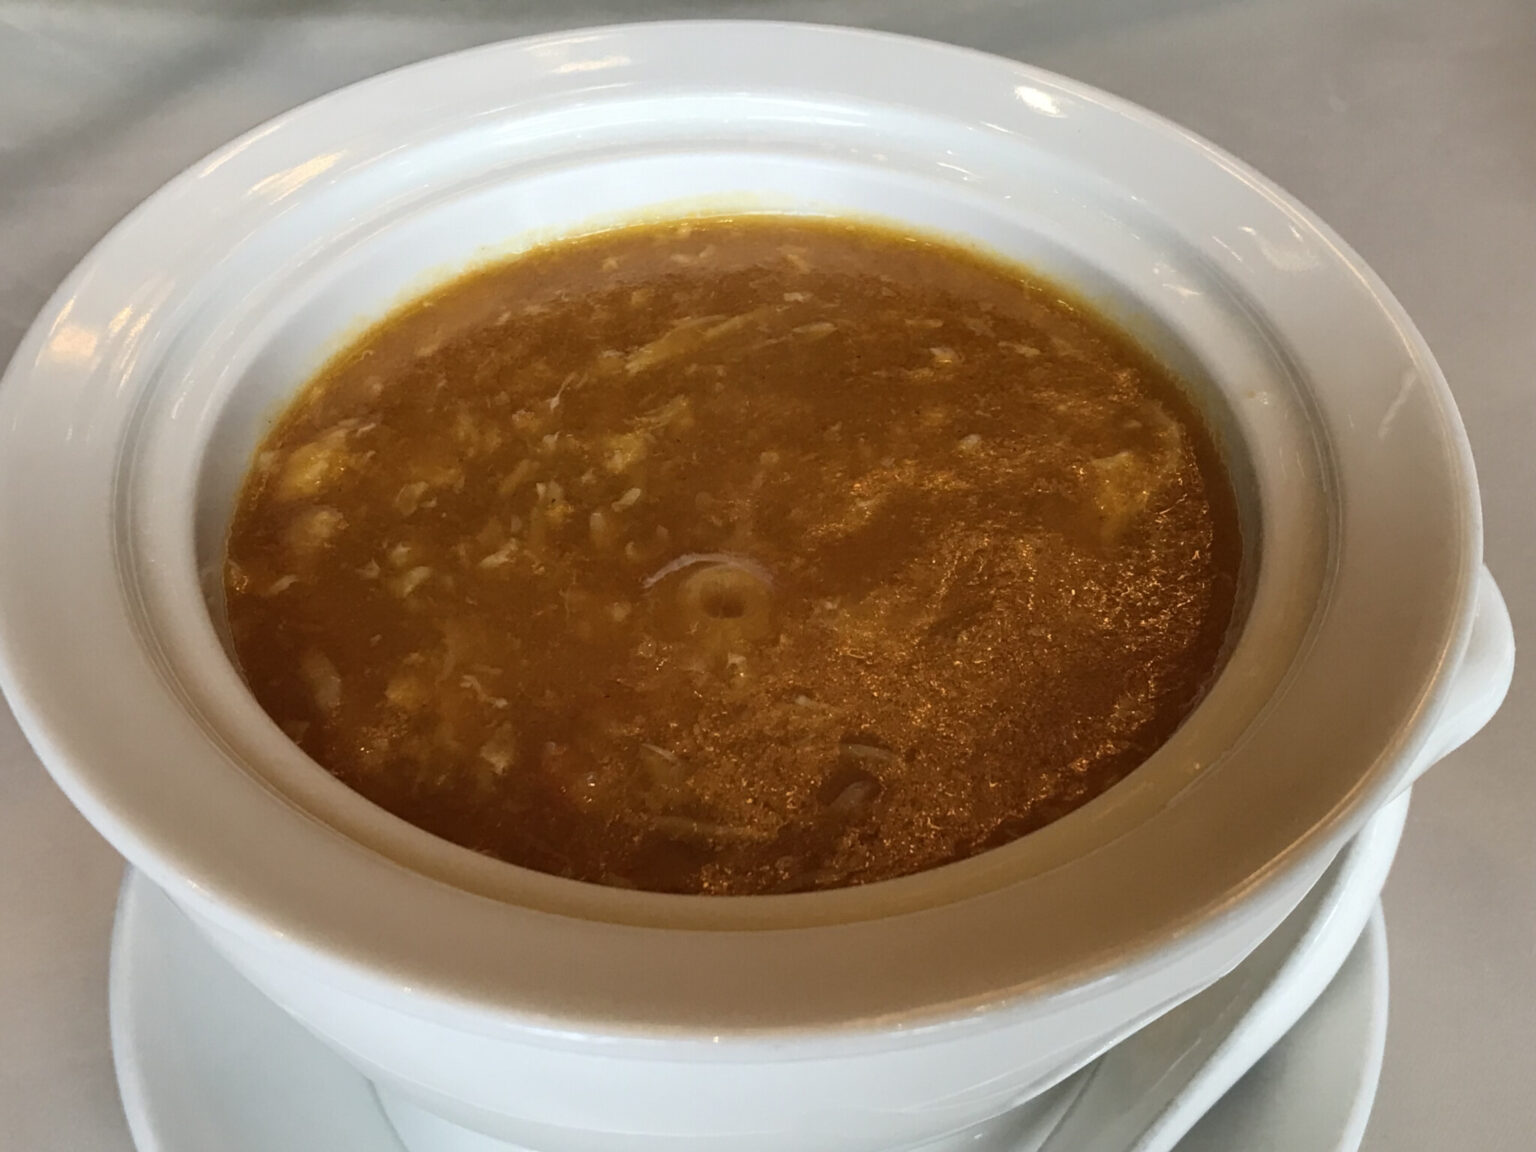 蟹黄鹅肝汤(フォアグラの茶碗蒸し、蟹の旨味スープ)。フォアグラの旨味とまろやかな茶碗蒸しに、濃厚なスープが絡む絶品。